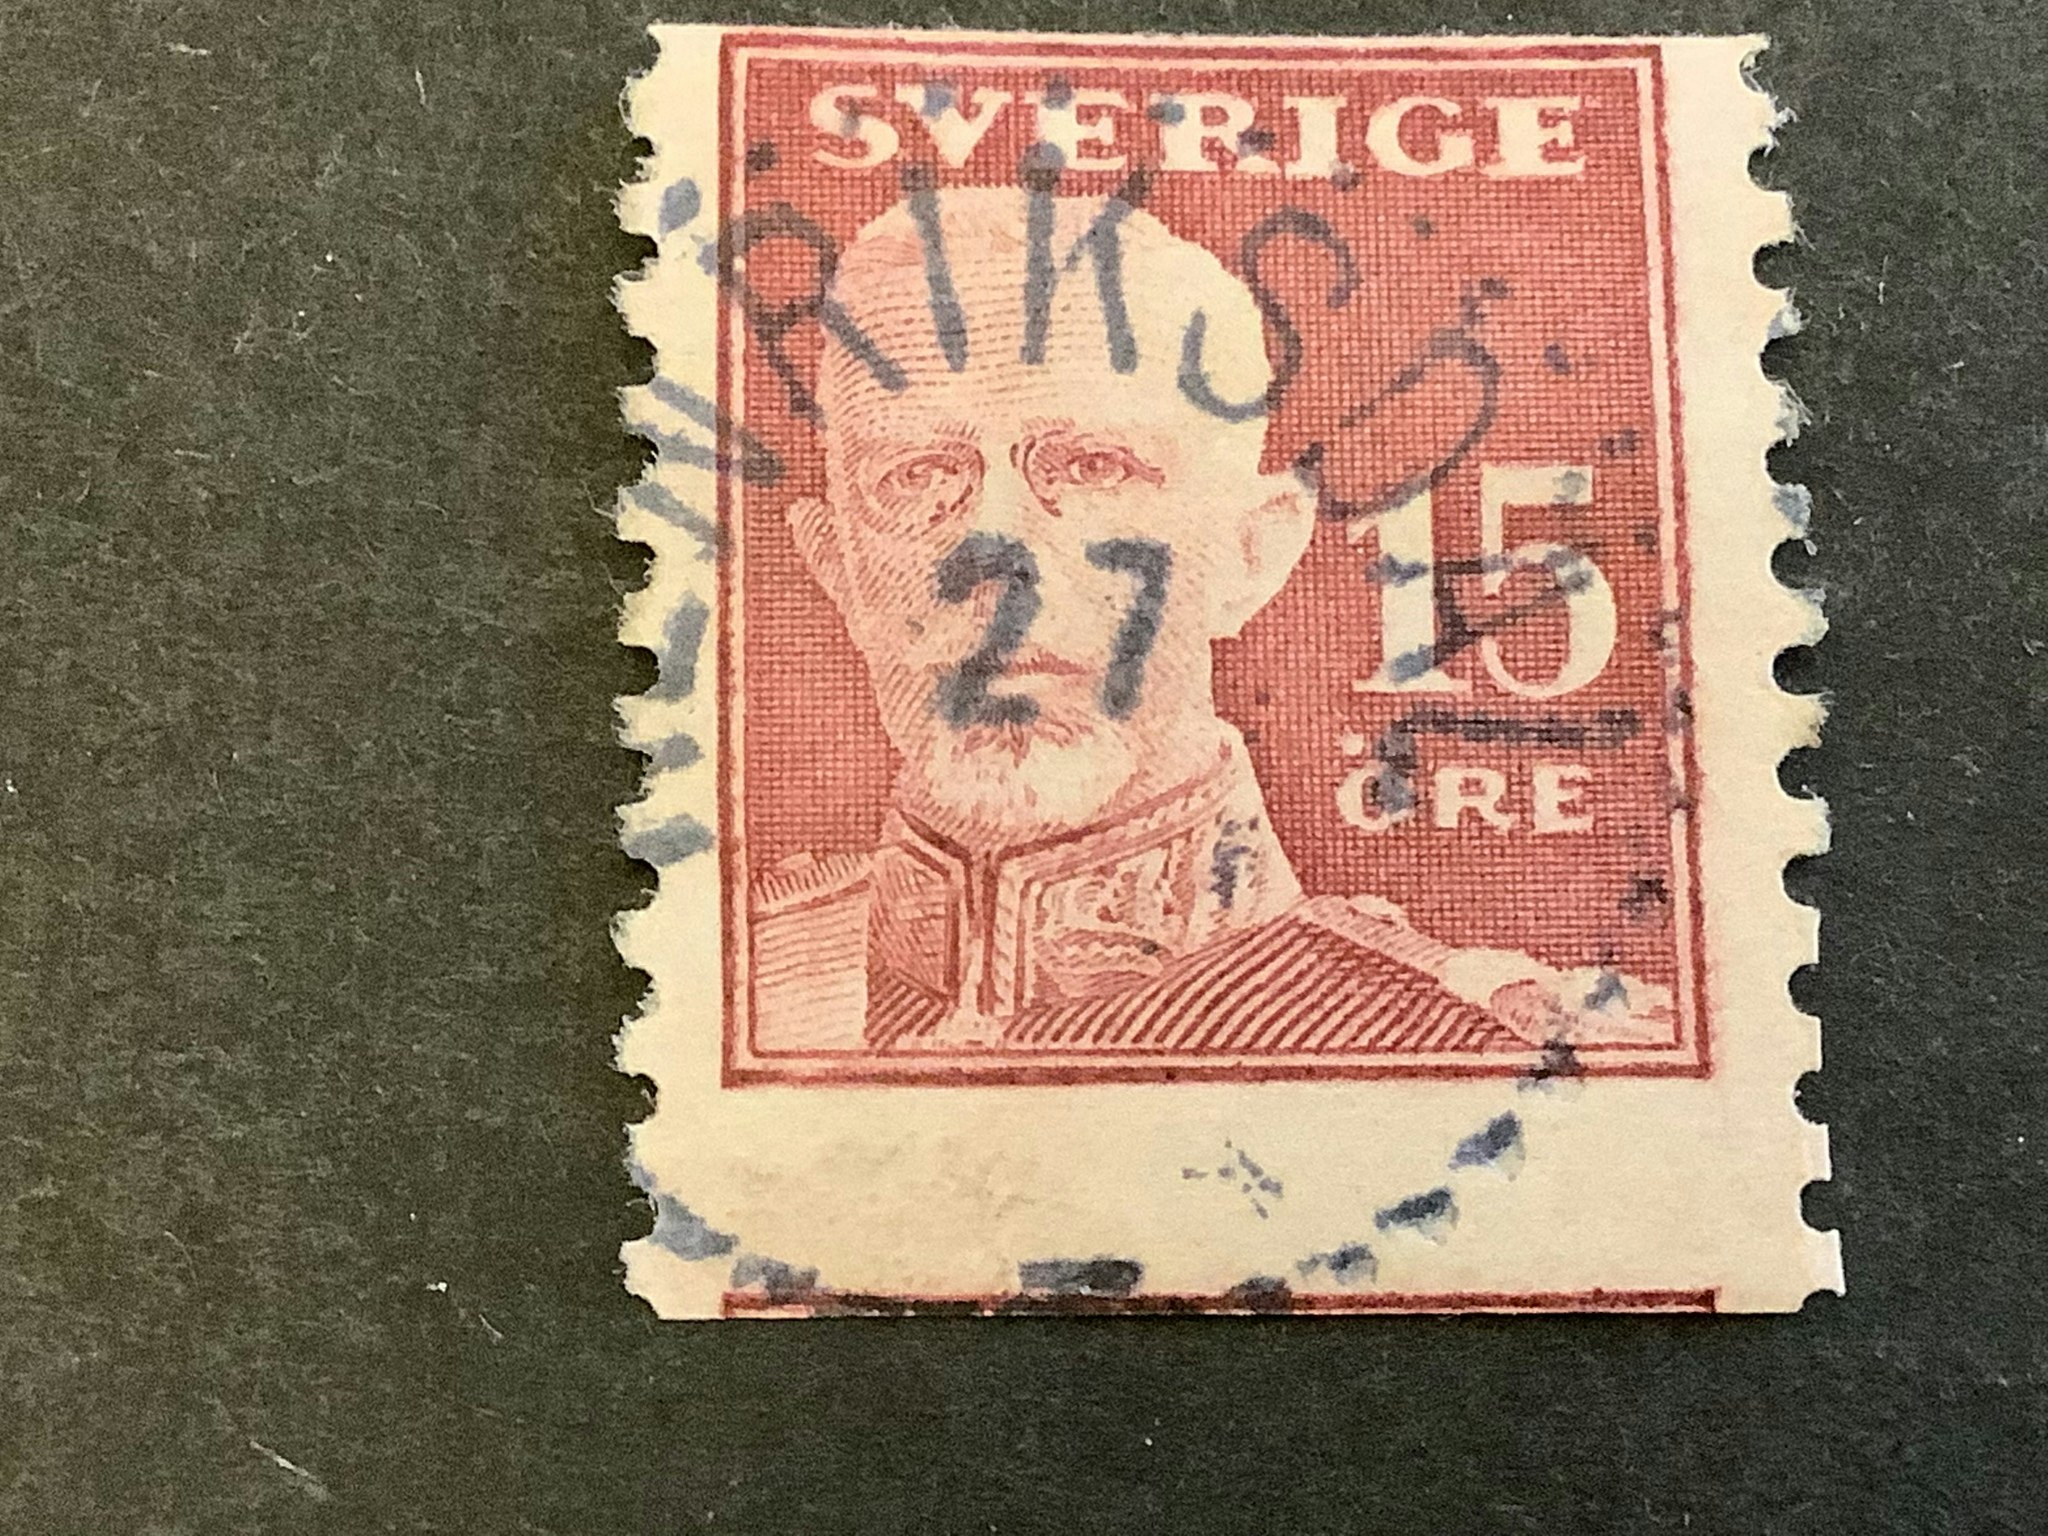 Gustaf V en face facit nr 150 med del av 2 frimärksbilder